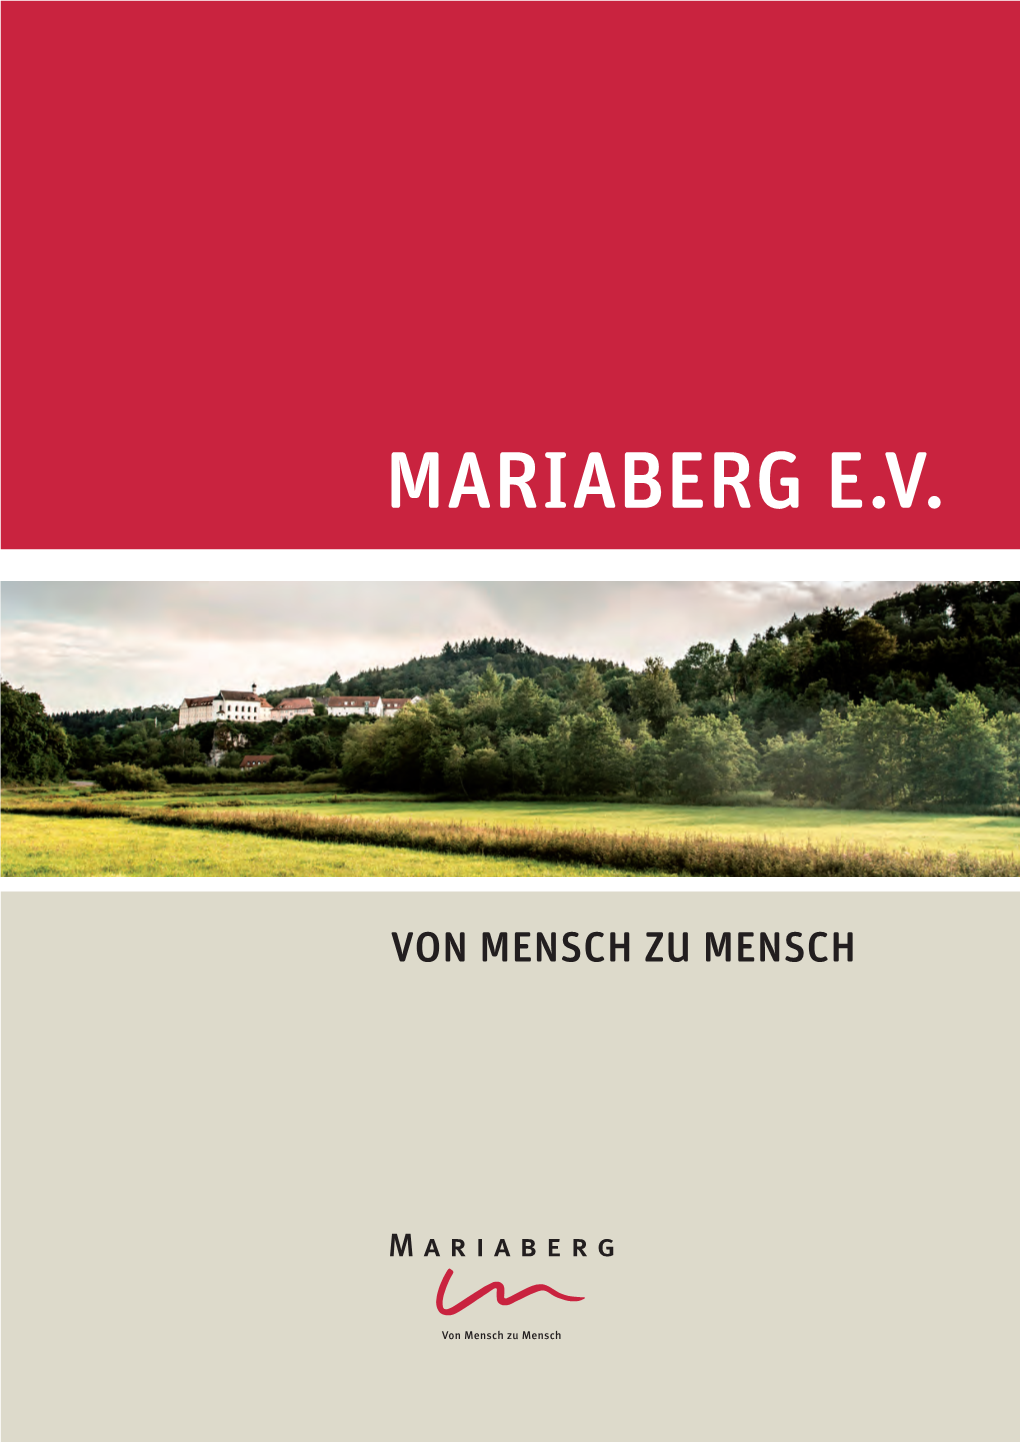 Mariaberg E.V